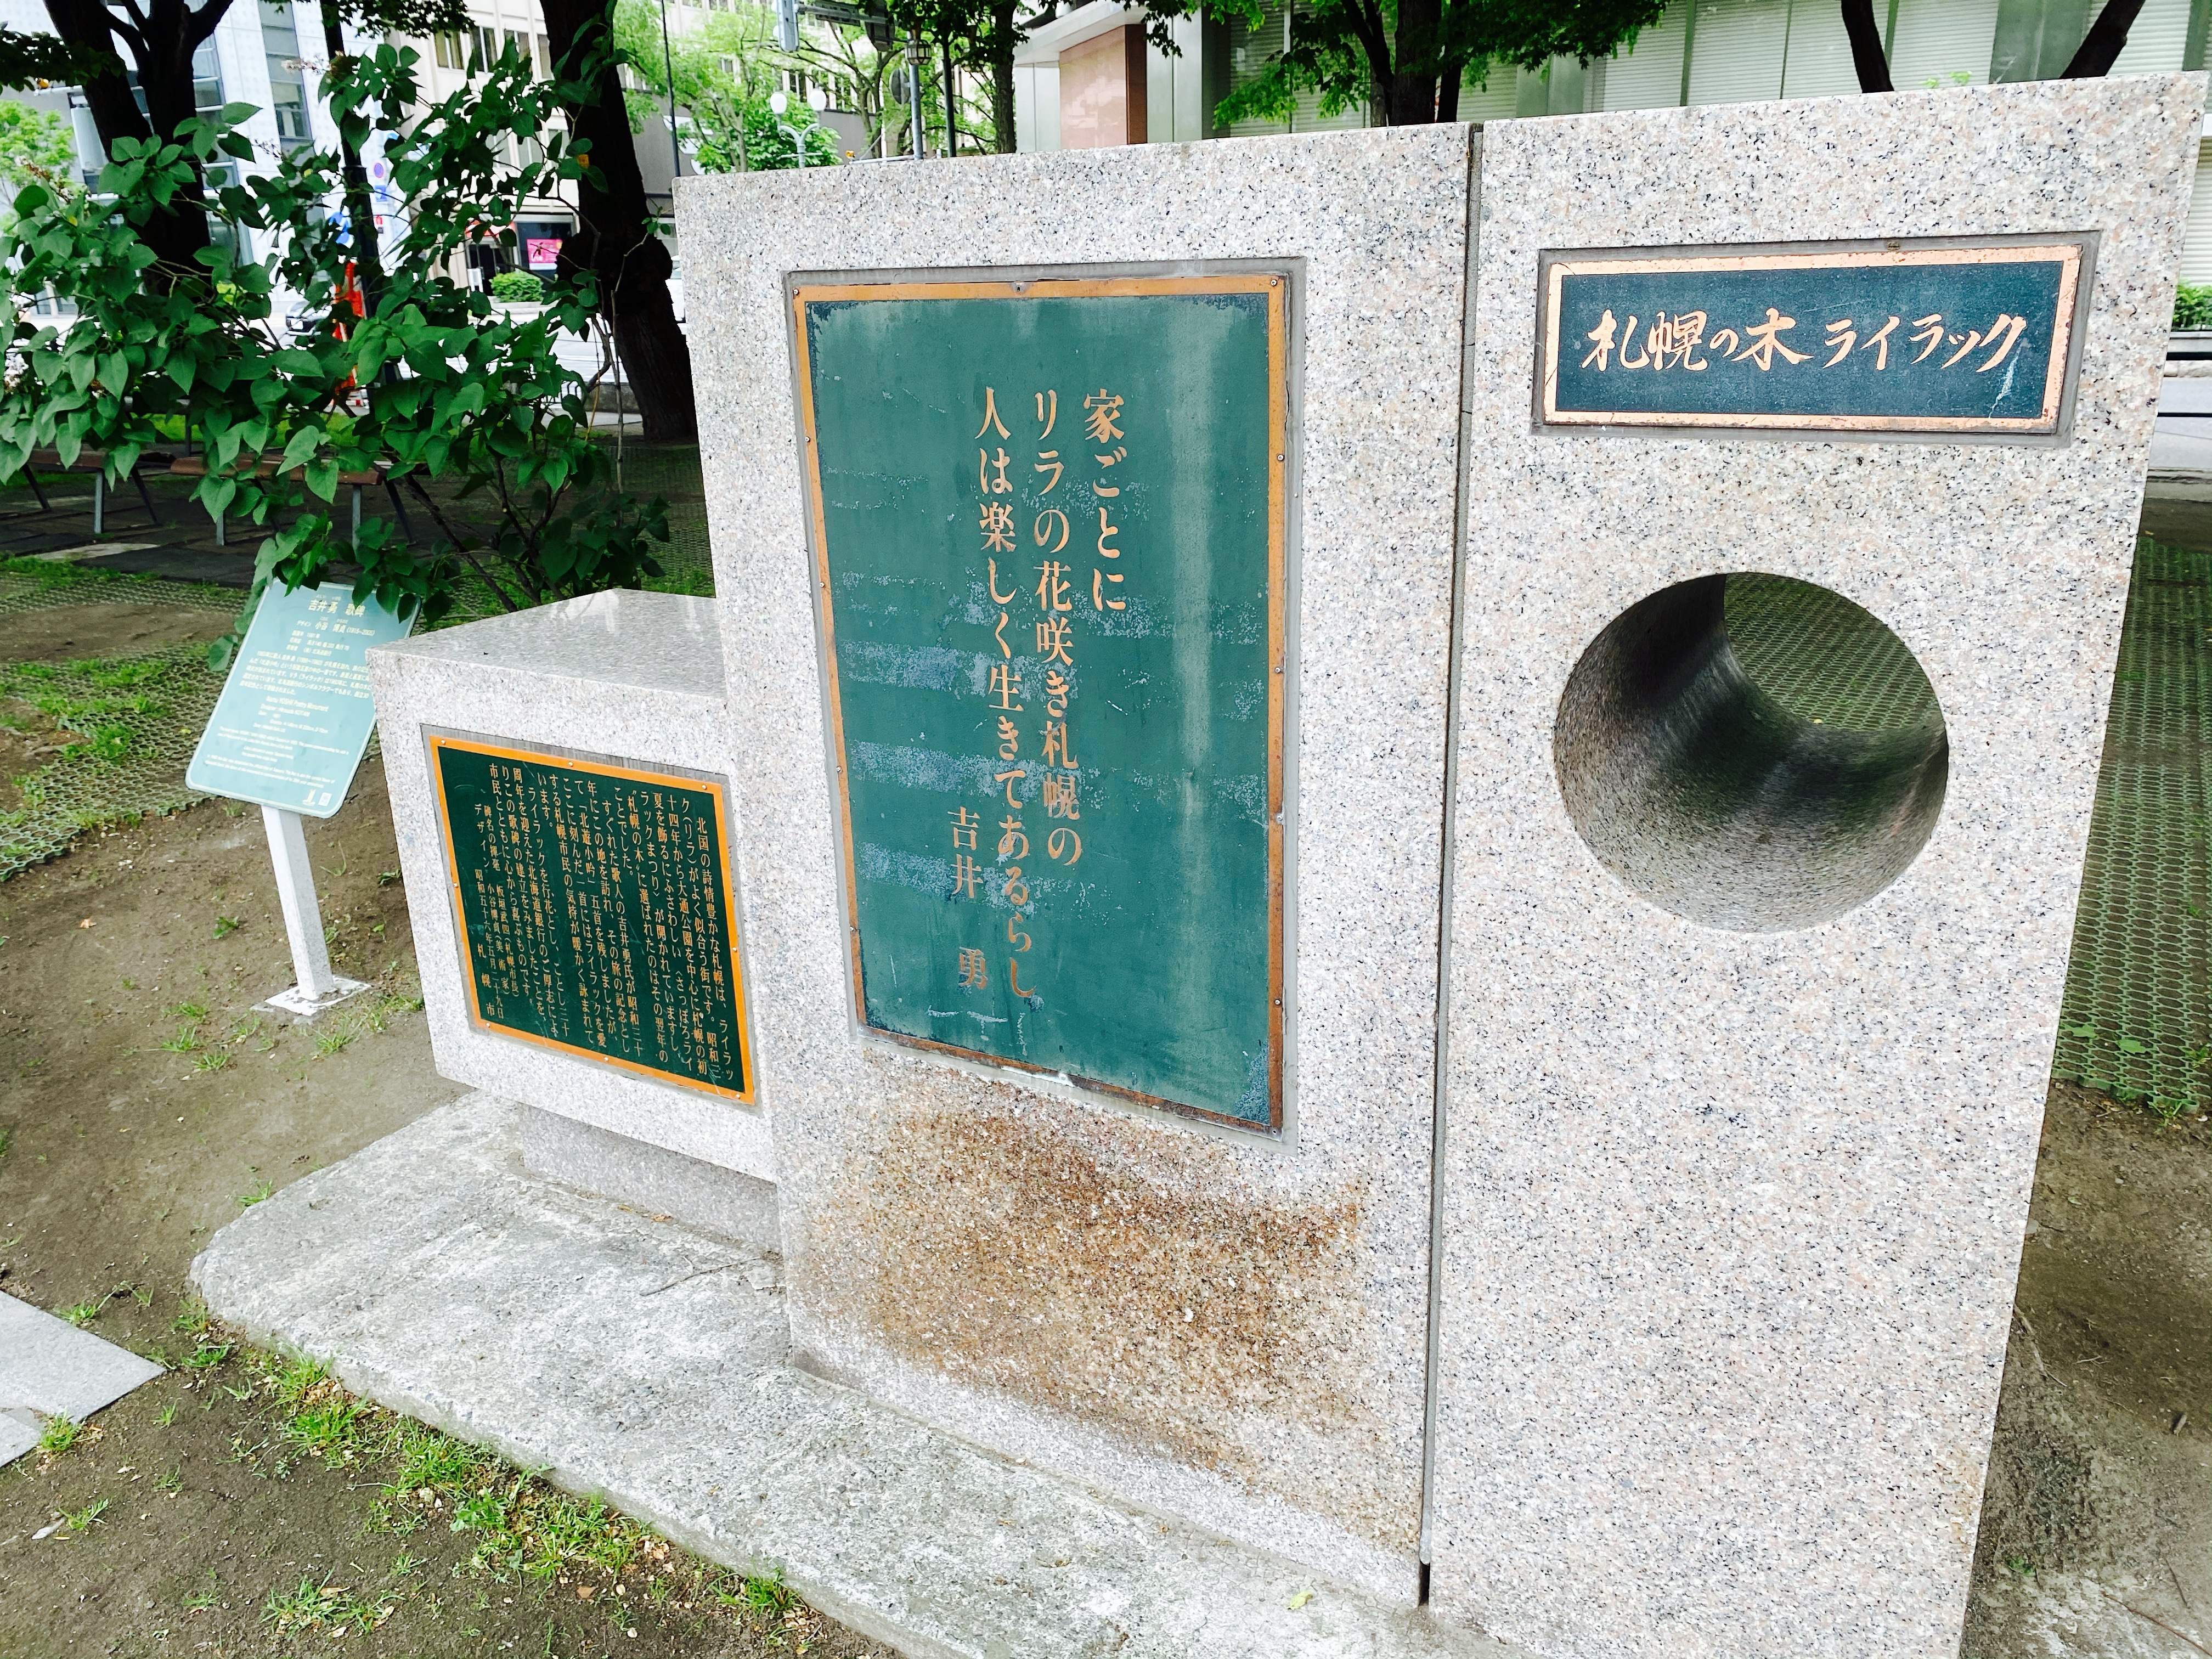 吉井勇歌碑には「家ごとに リラの花咲き札幌の 人は楽しく生きてあるらし」の歌が刻まれている